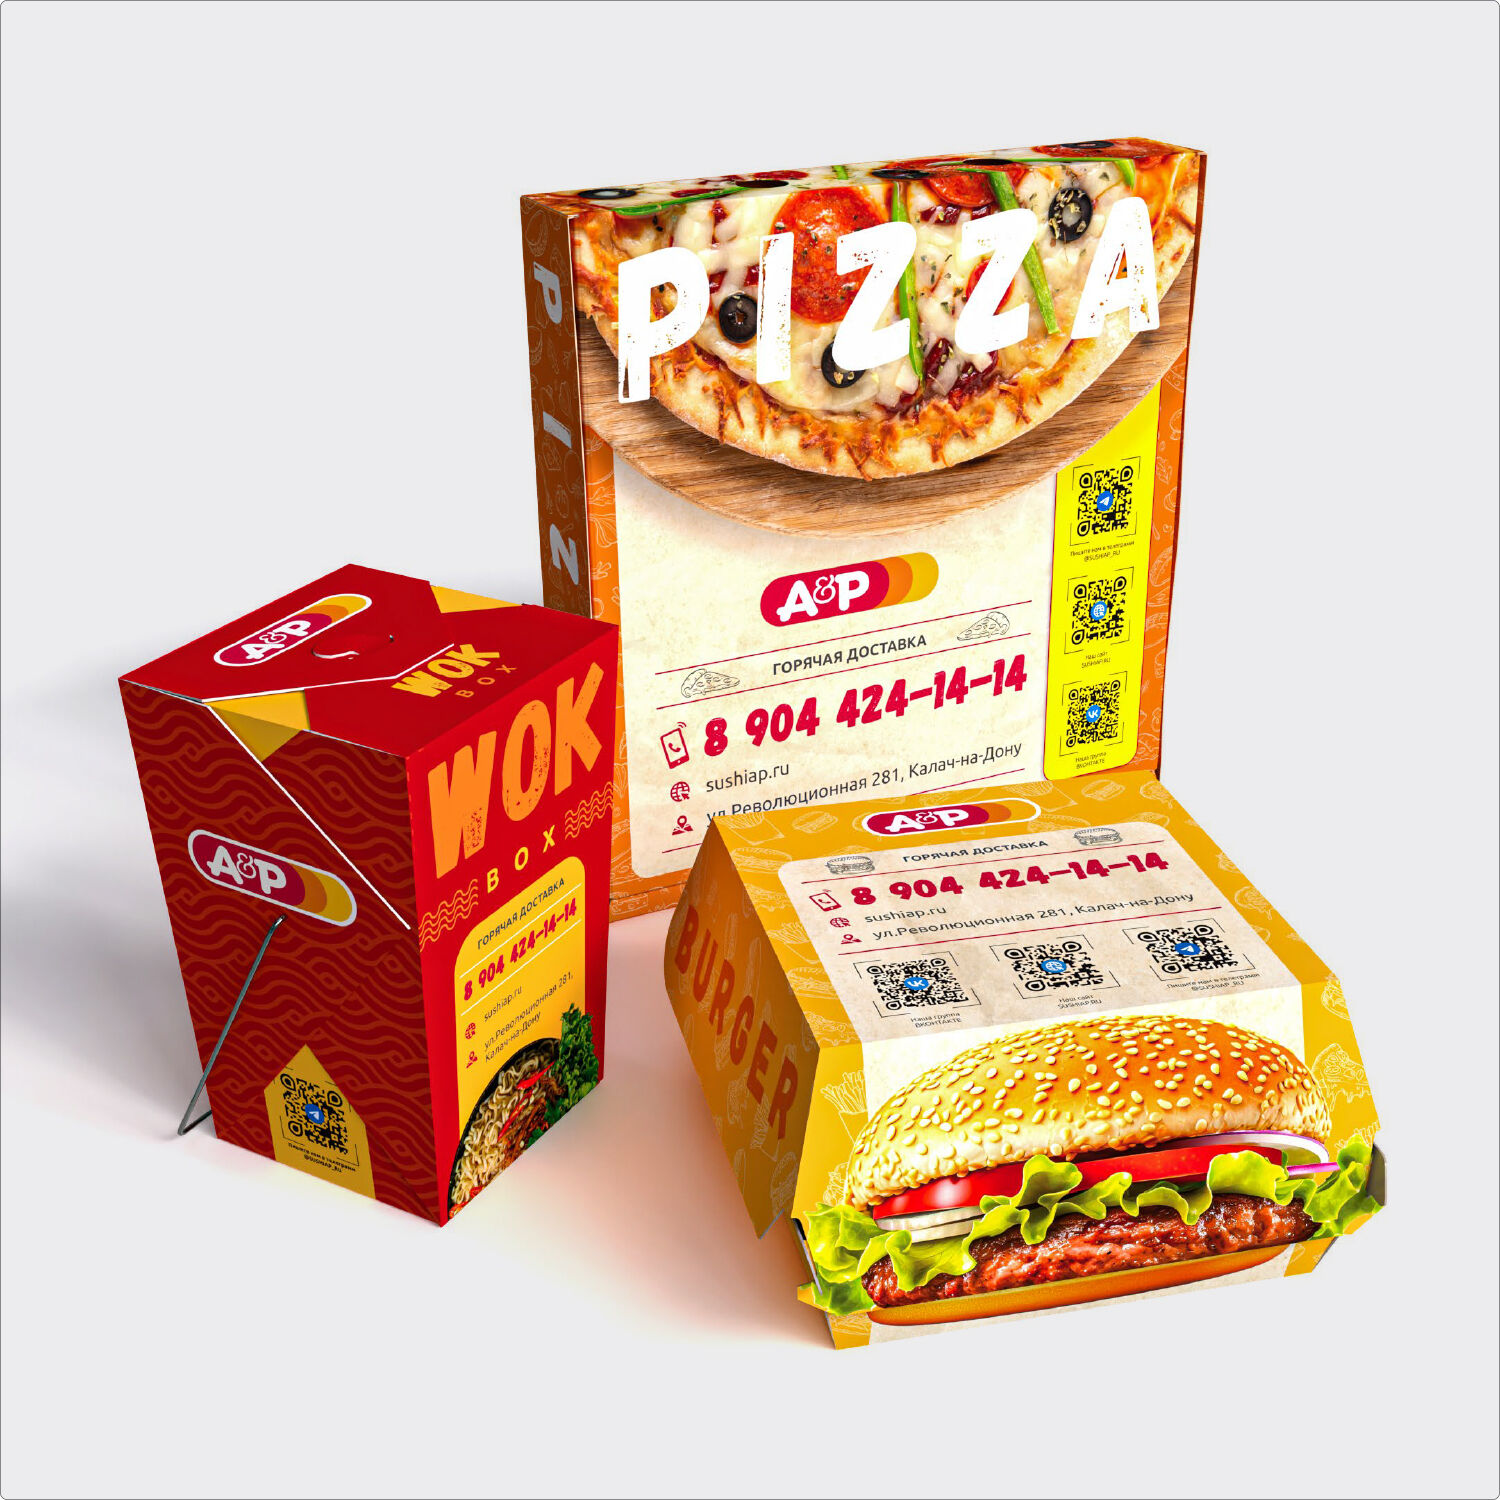 Дизайн картонной упаковки для продуктов питания. за 5 000 руб.